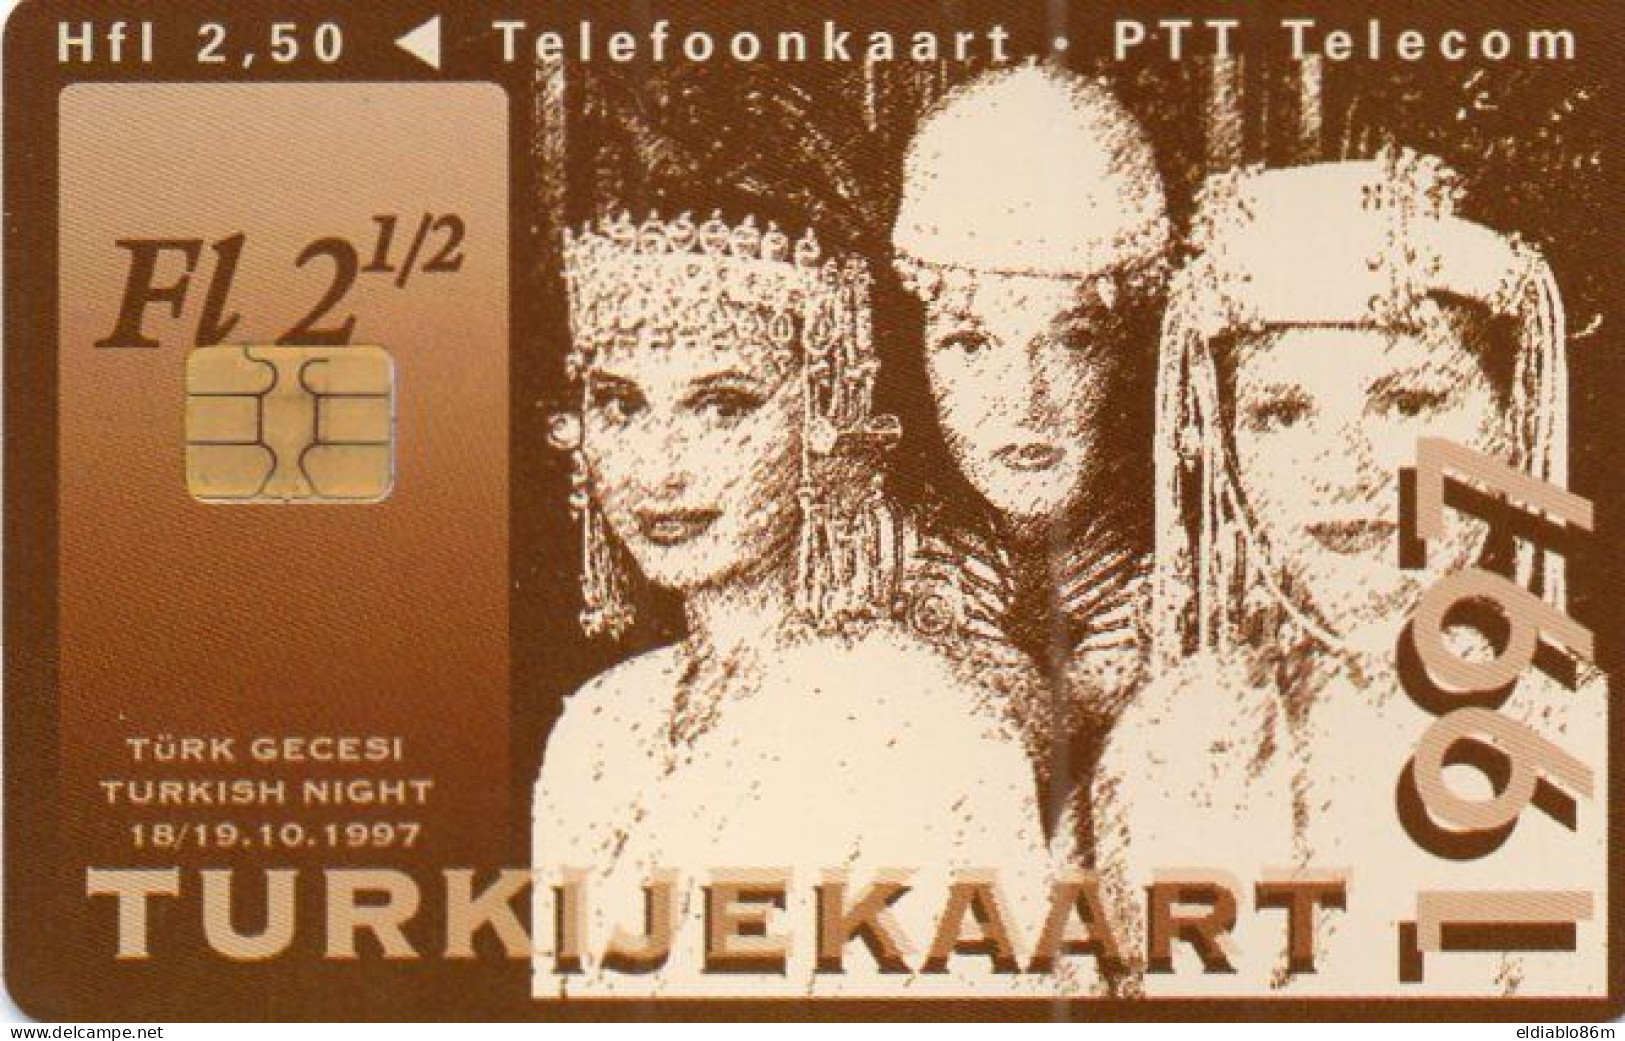 NETHERLANDS - CHIP CARD - CKD114 - TURKIJEKAART - TURKISH NIGHT - WOMAN - öffentlich